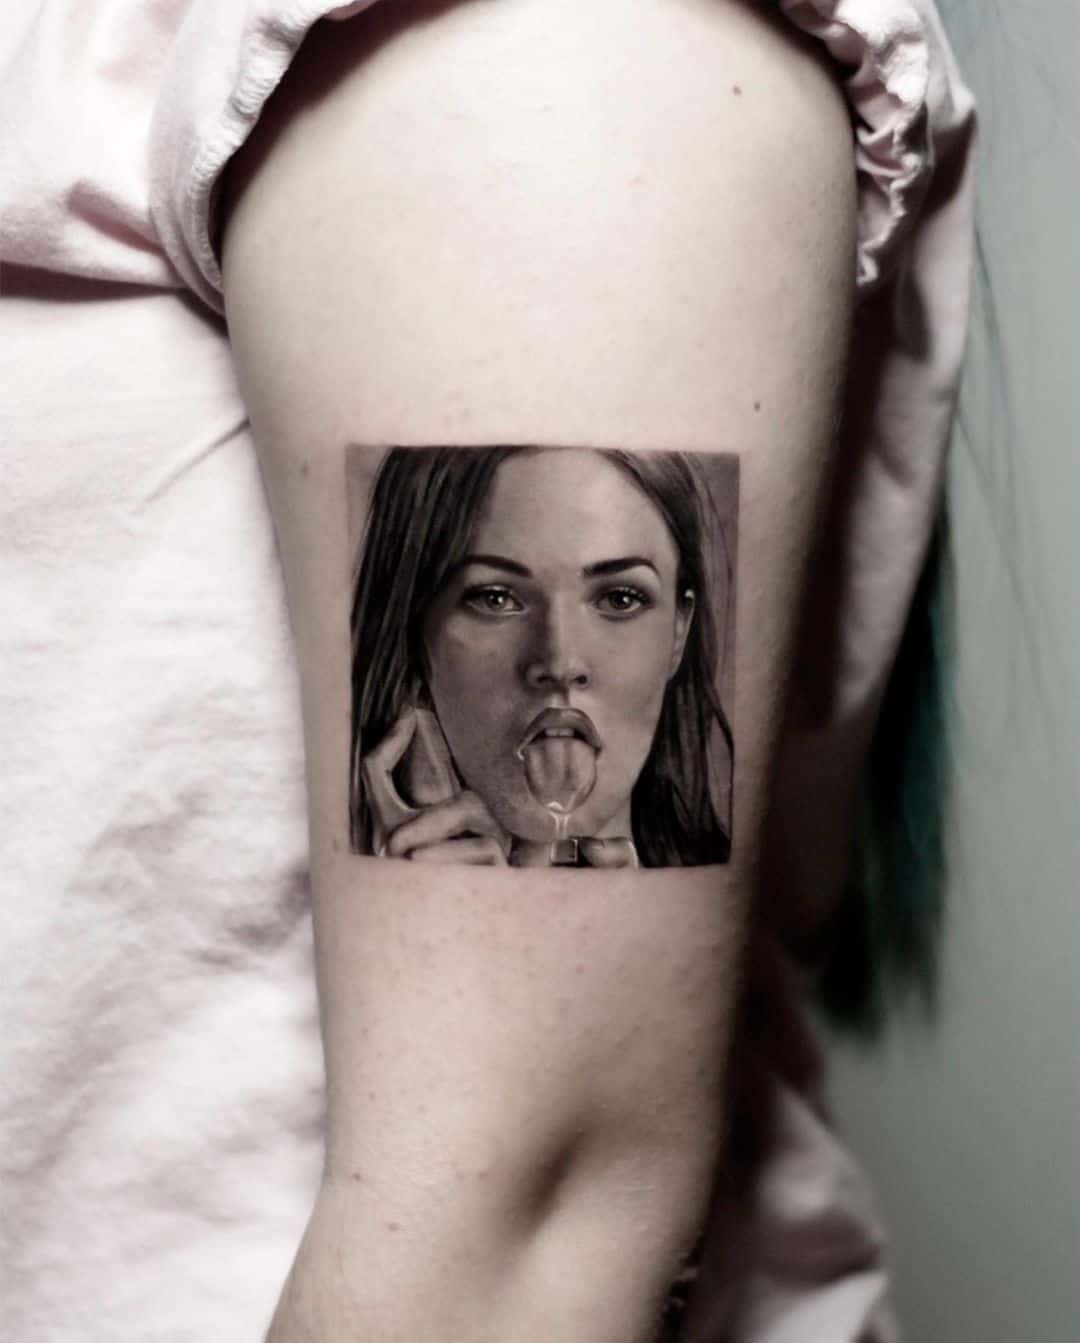 Megan fox Reaistic portrait tattoo by